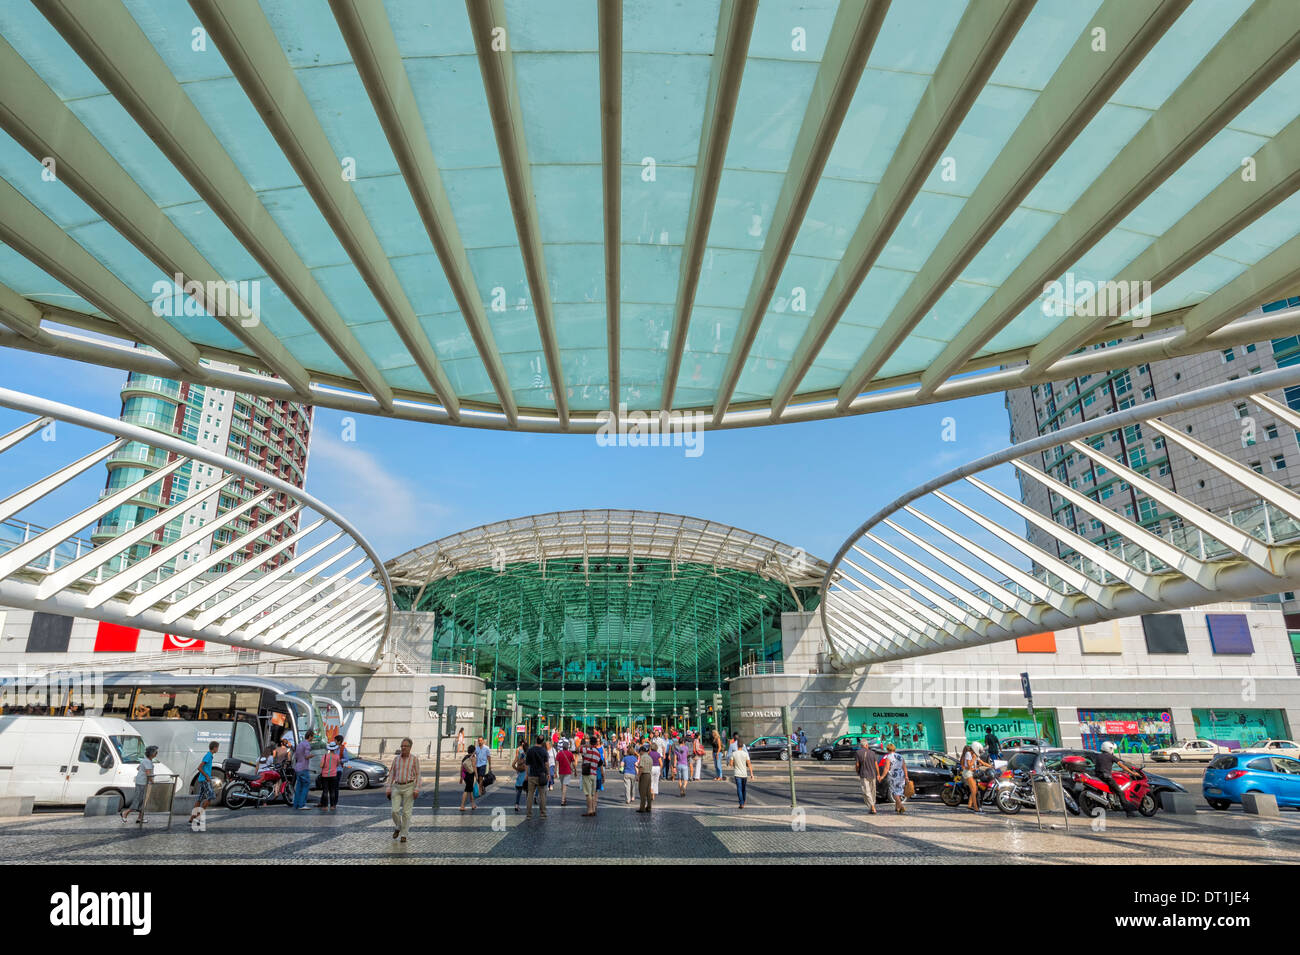 Le centre commercial Vasco da Gama, Parque das Nações (Parc des Nations), Lisbonne, Portugal, Europe Banque D'Images